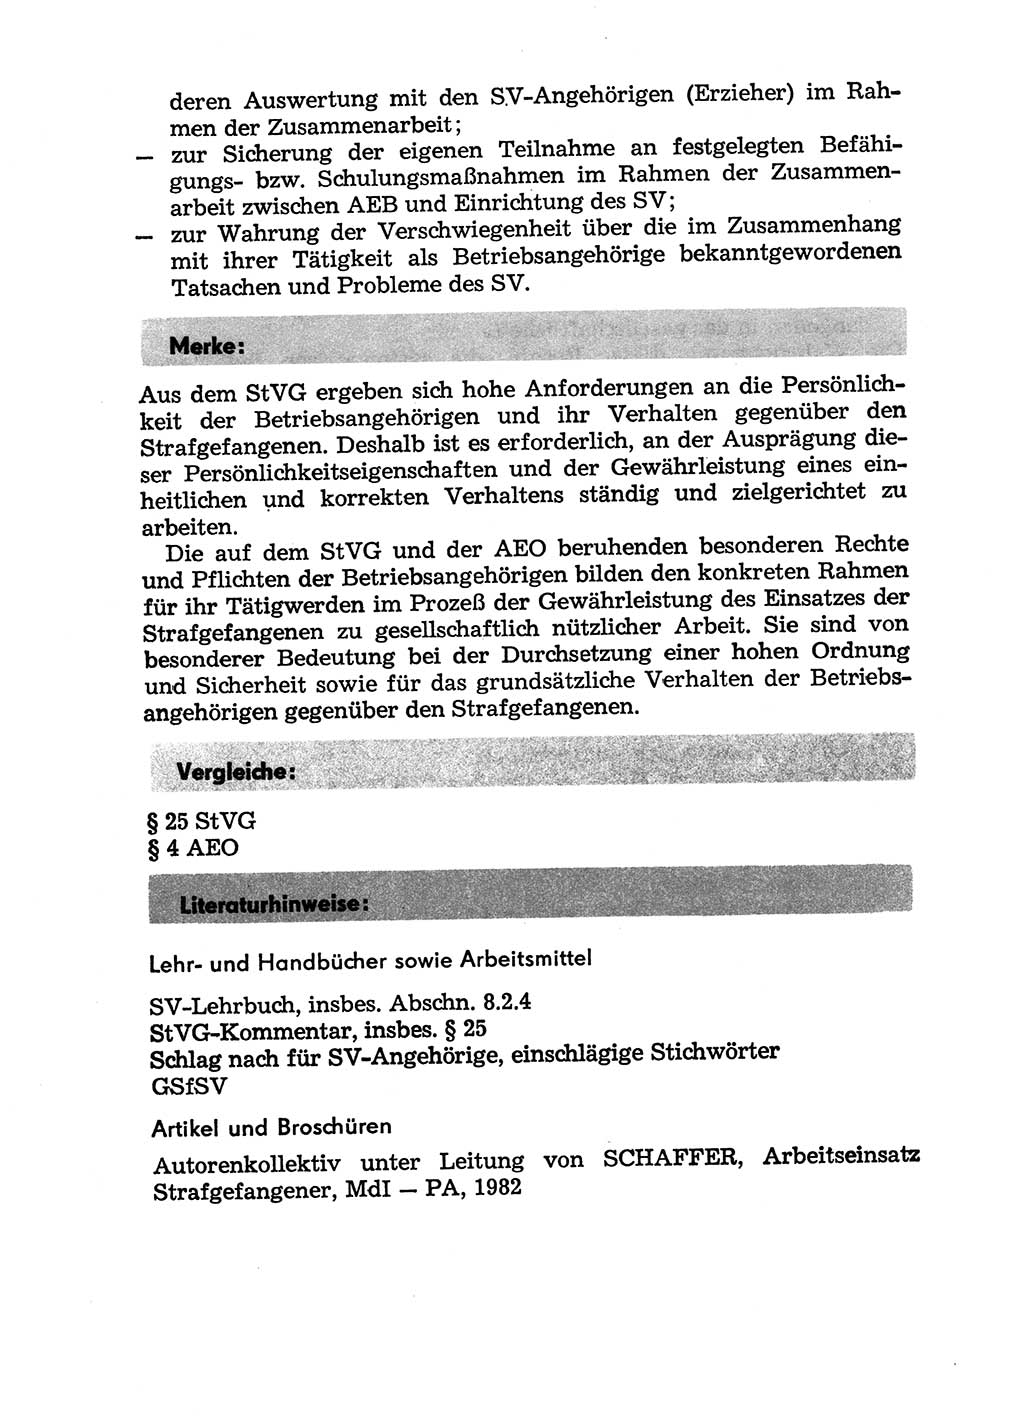 Handbuch für Betriebsangehörige, Abteilung Strafvollzug (SV) [Ministerium des Innern (MdI) Deutsche Demokratische Republik (DDR)] 1981, Seite 112 (Hb. BA Abt. SV MdI DDR 1981, S. 112)